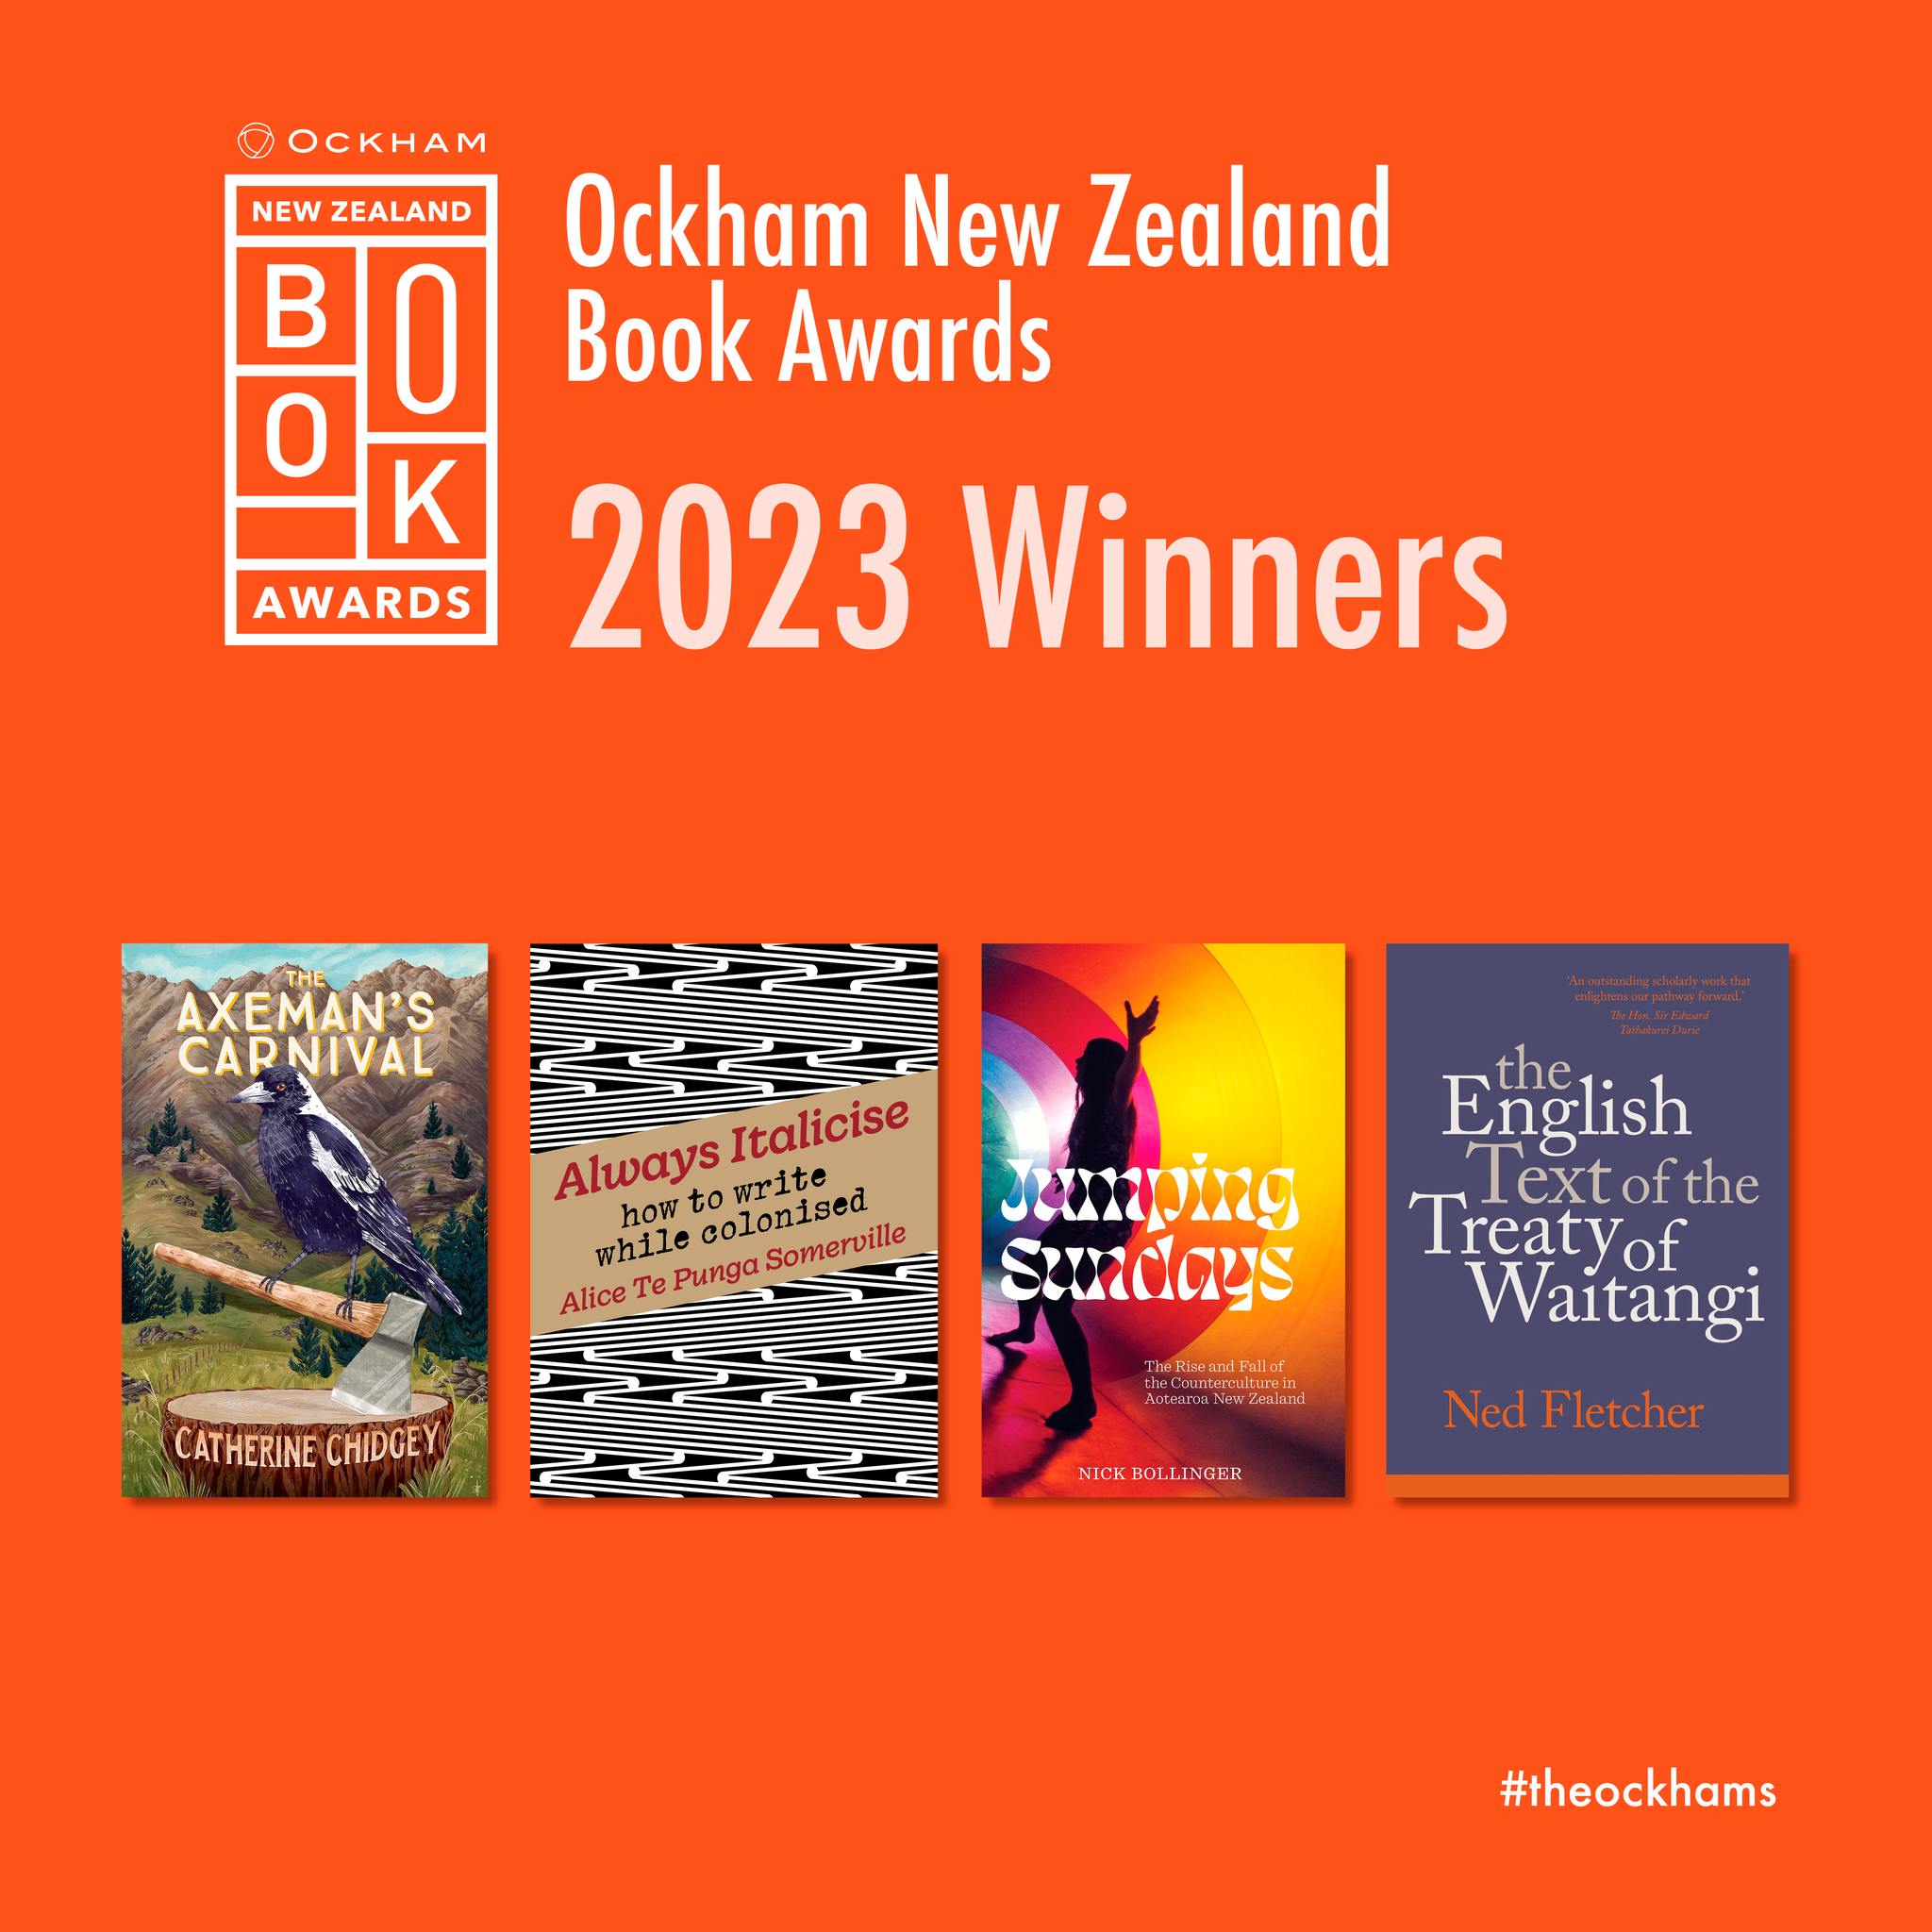 Ockham NZ Book Awards 2023 winners announced